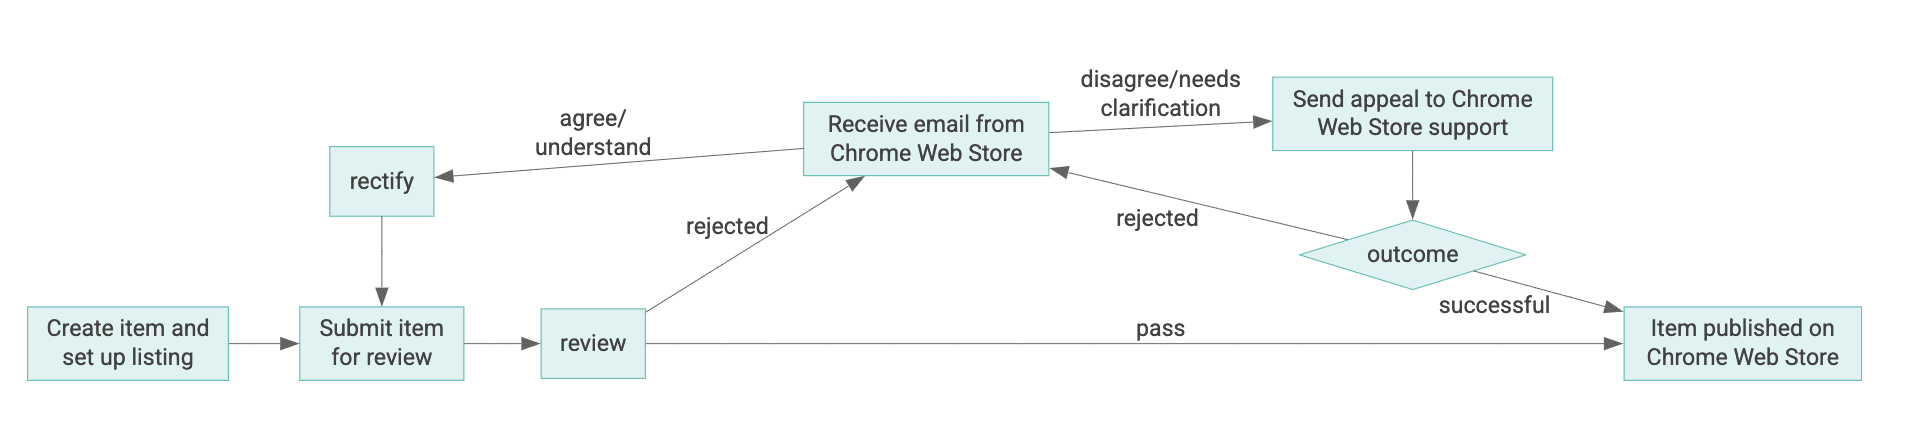 Bir Chrome Web Mağazası öğesinin yaşam döngüsü şeması